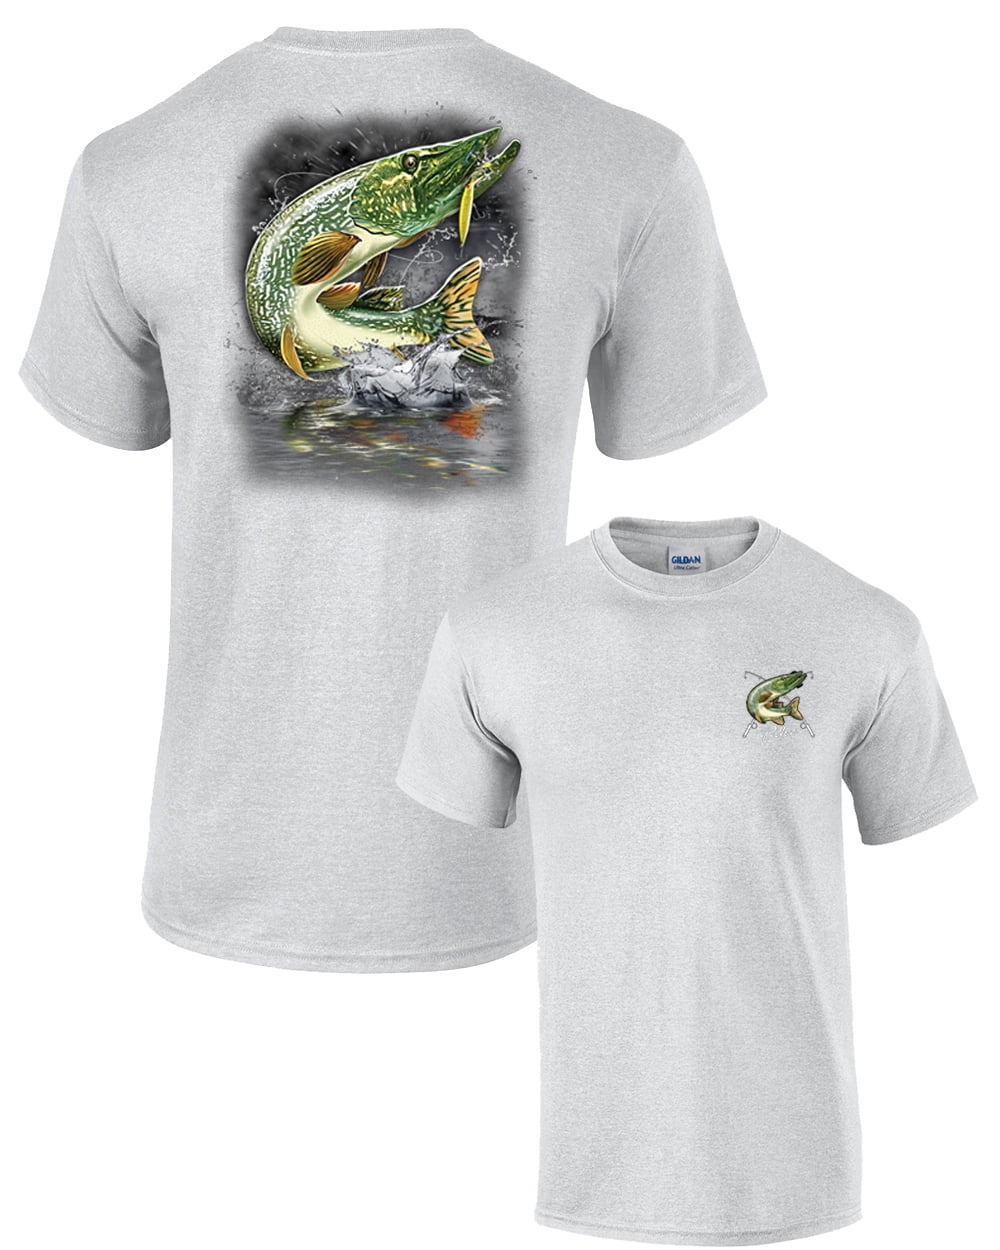 Hotspot Men's T-Shirt Fishing Mania (Pike)